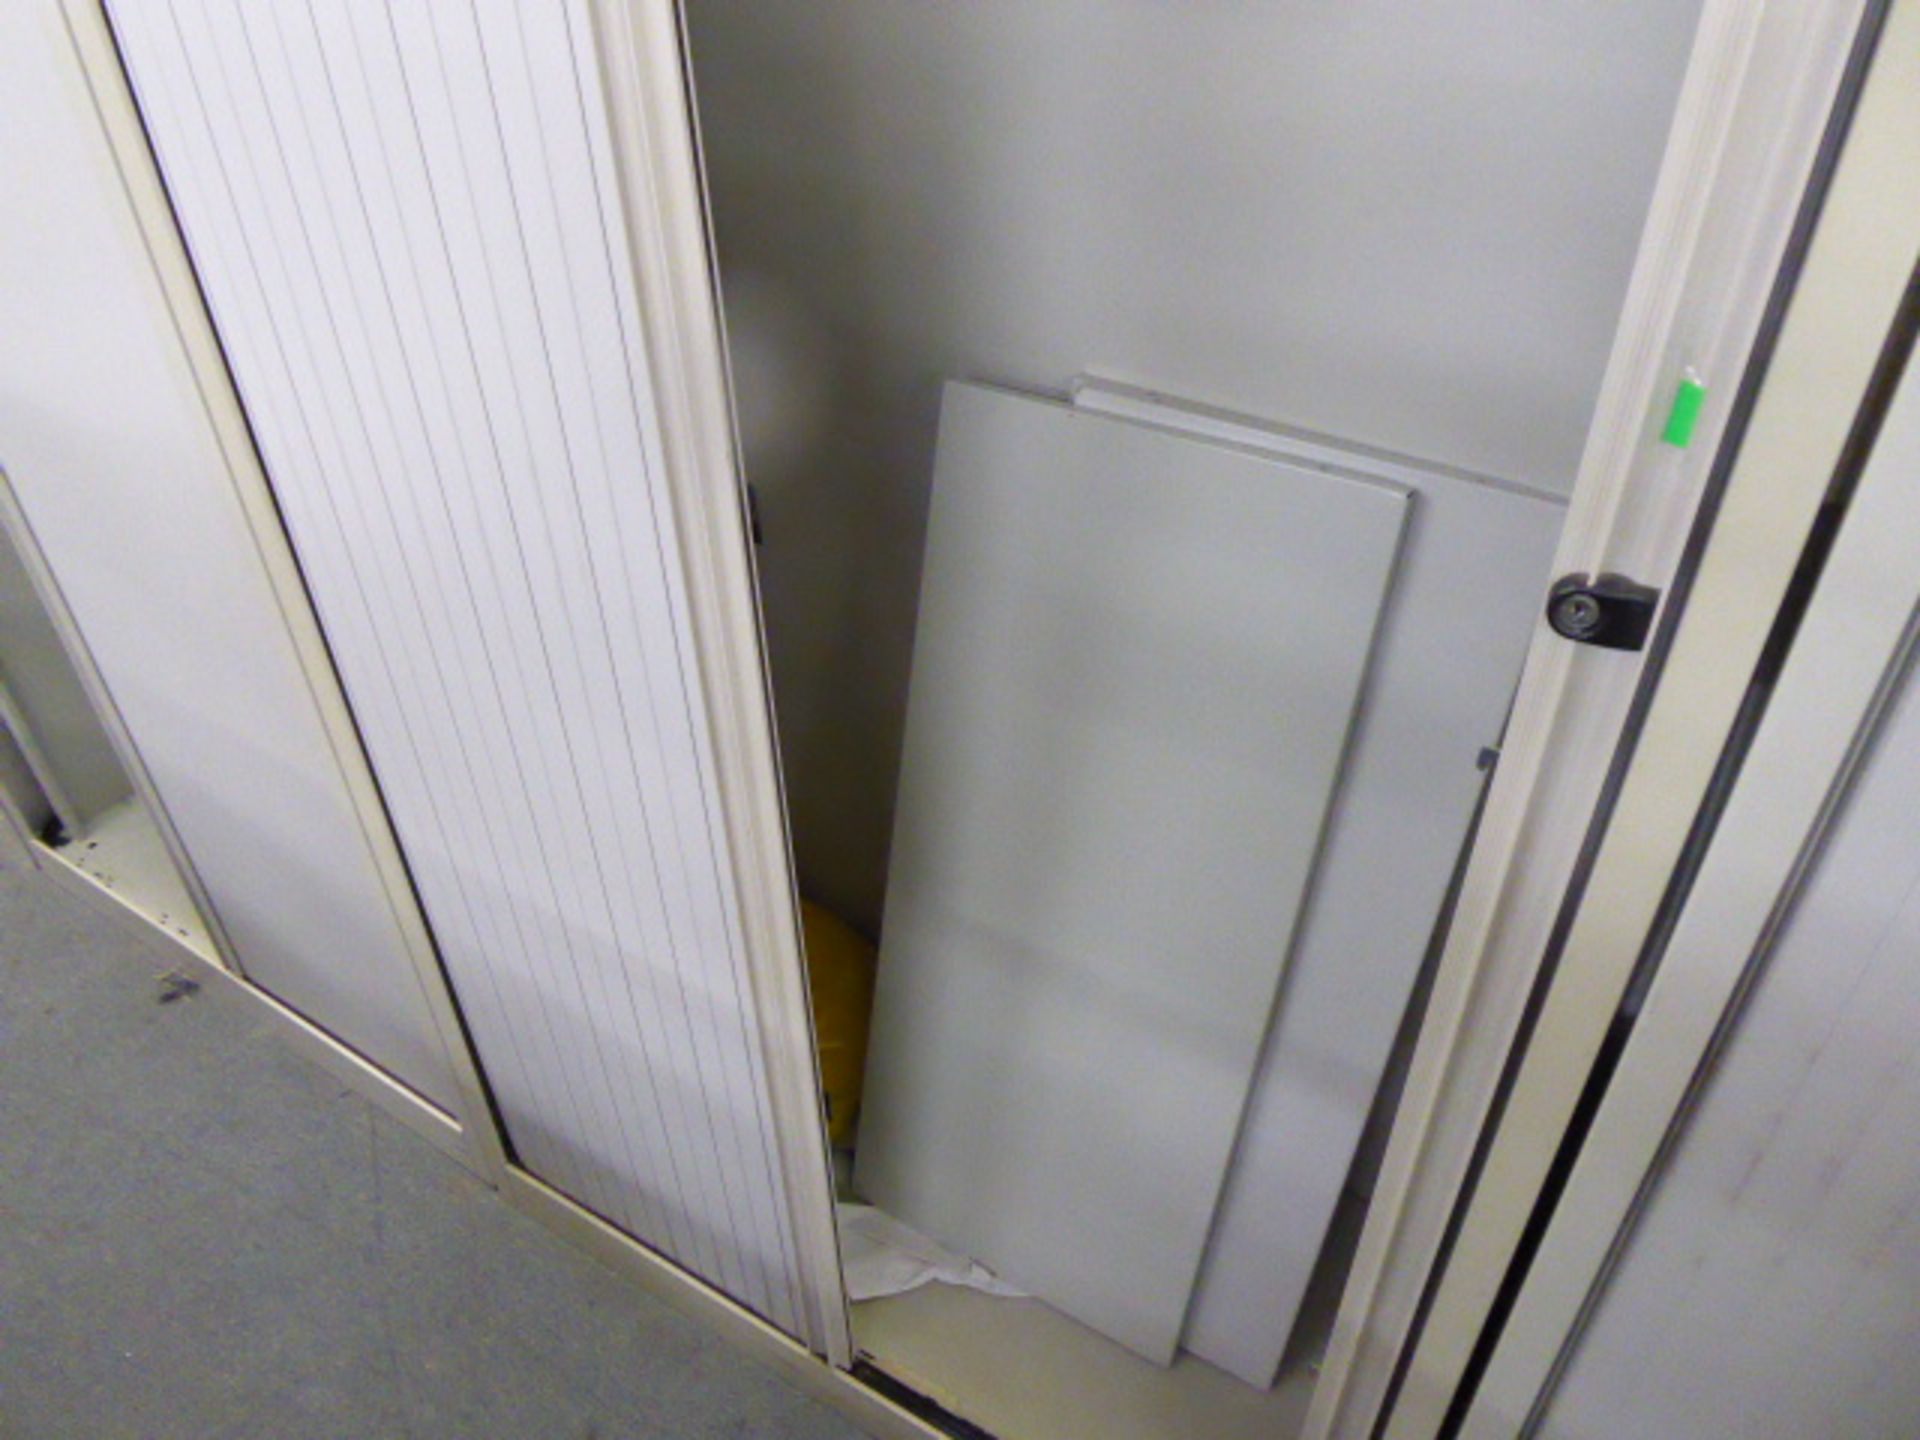 100cm Bisley grey 2 door tambour storage cabinet - Image 2 of 2